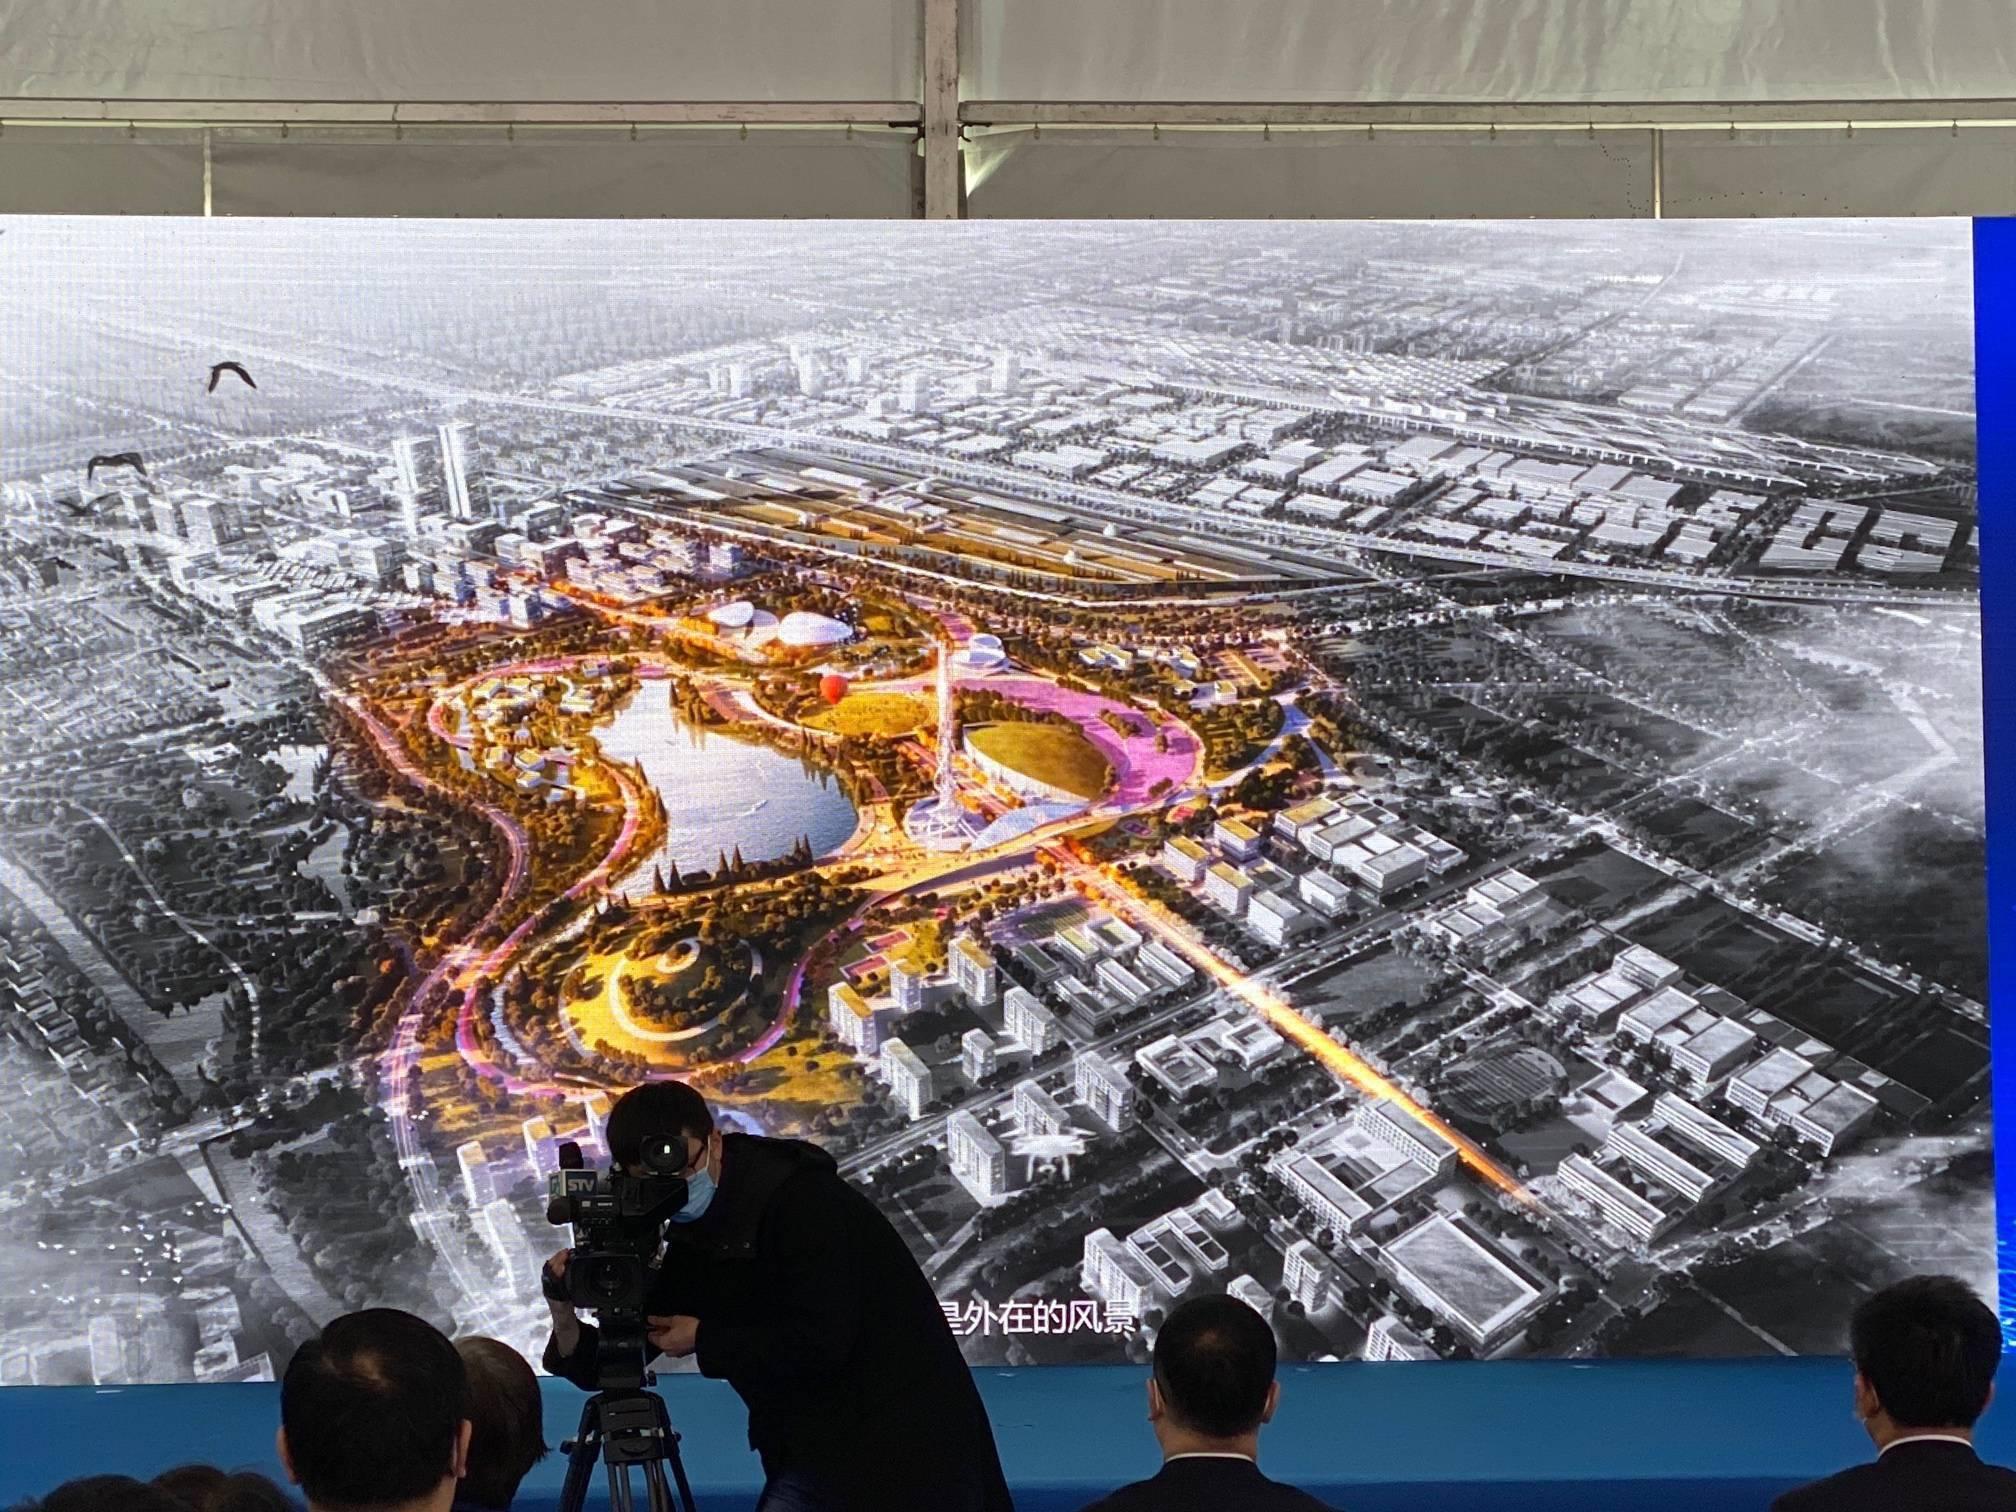 上海工业智能中心在马桥AI试验区开工，总投资14.4亿元